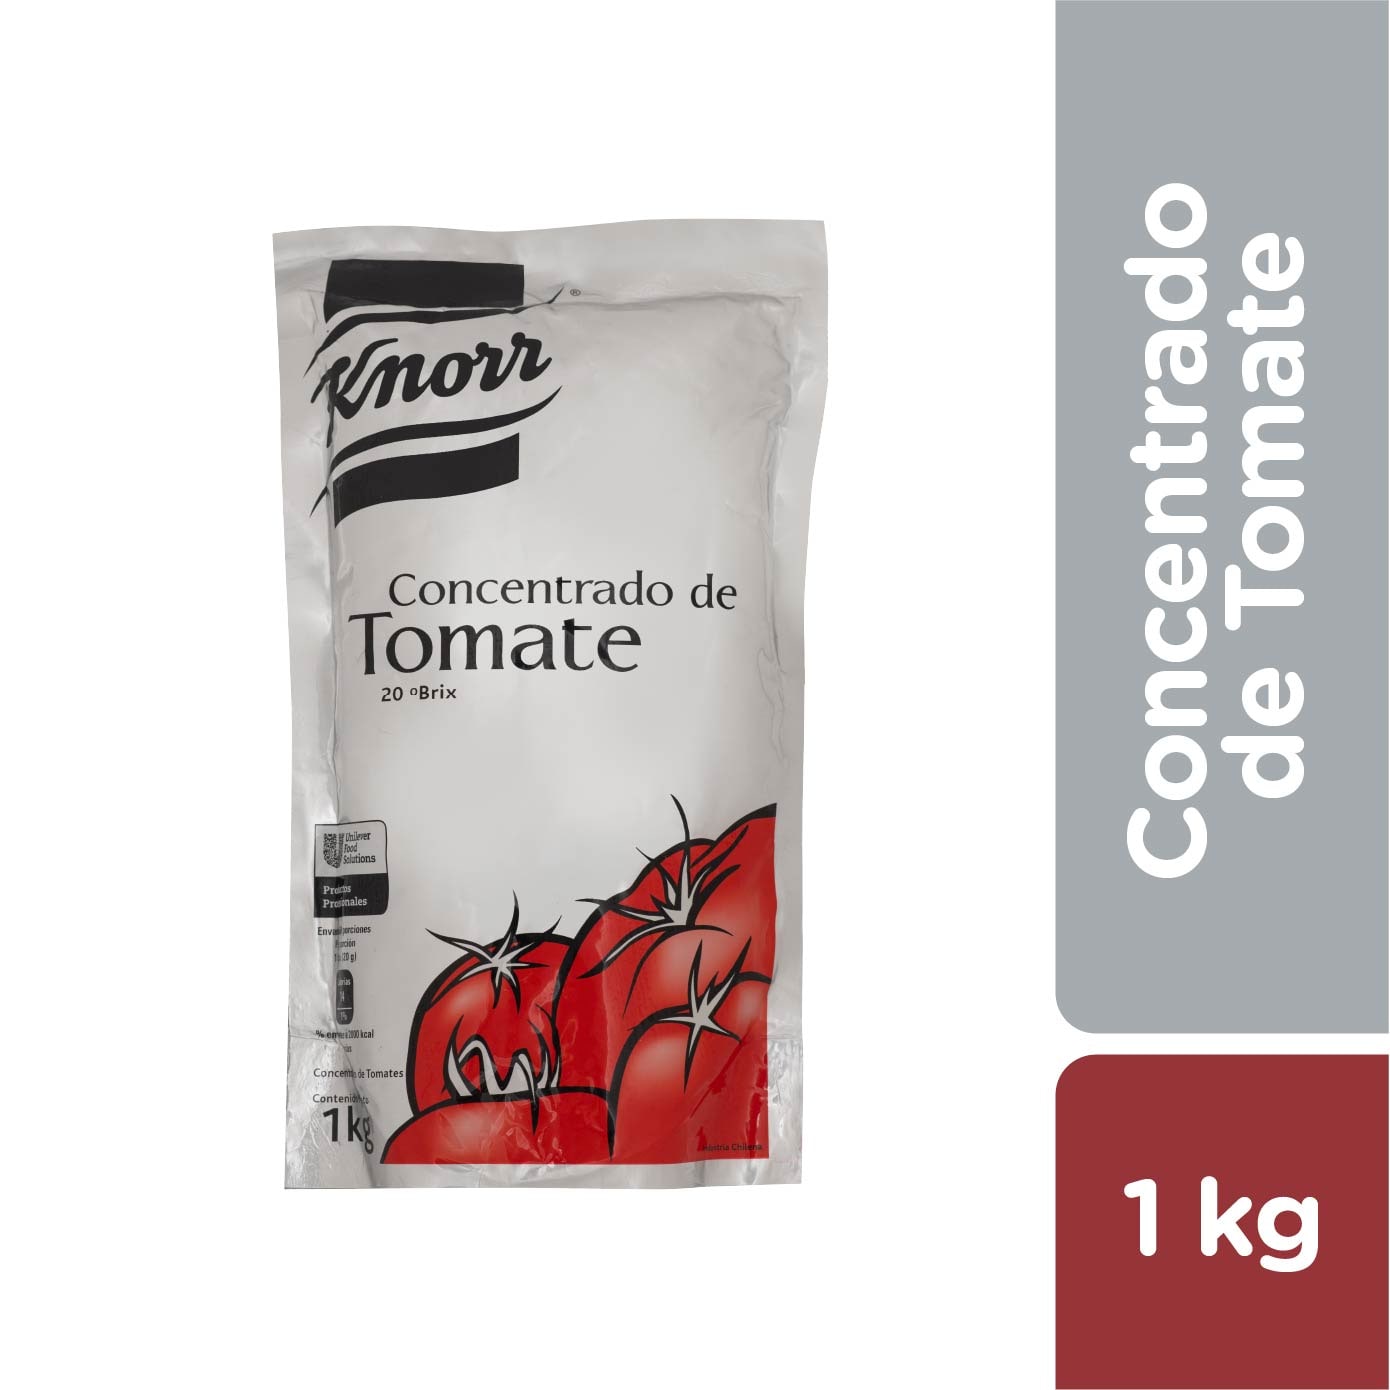 Knorr Extra Concentrado de Tomate 1 kg - 